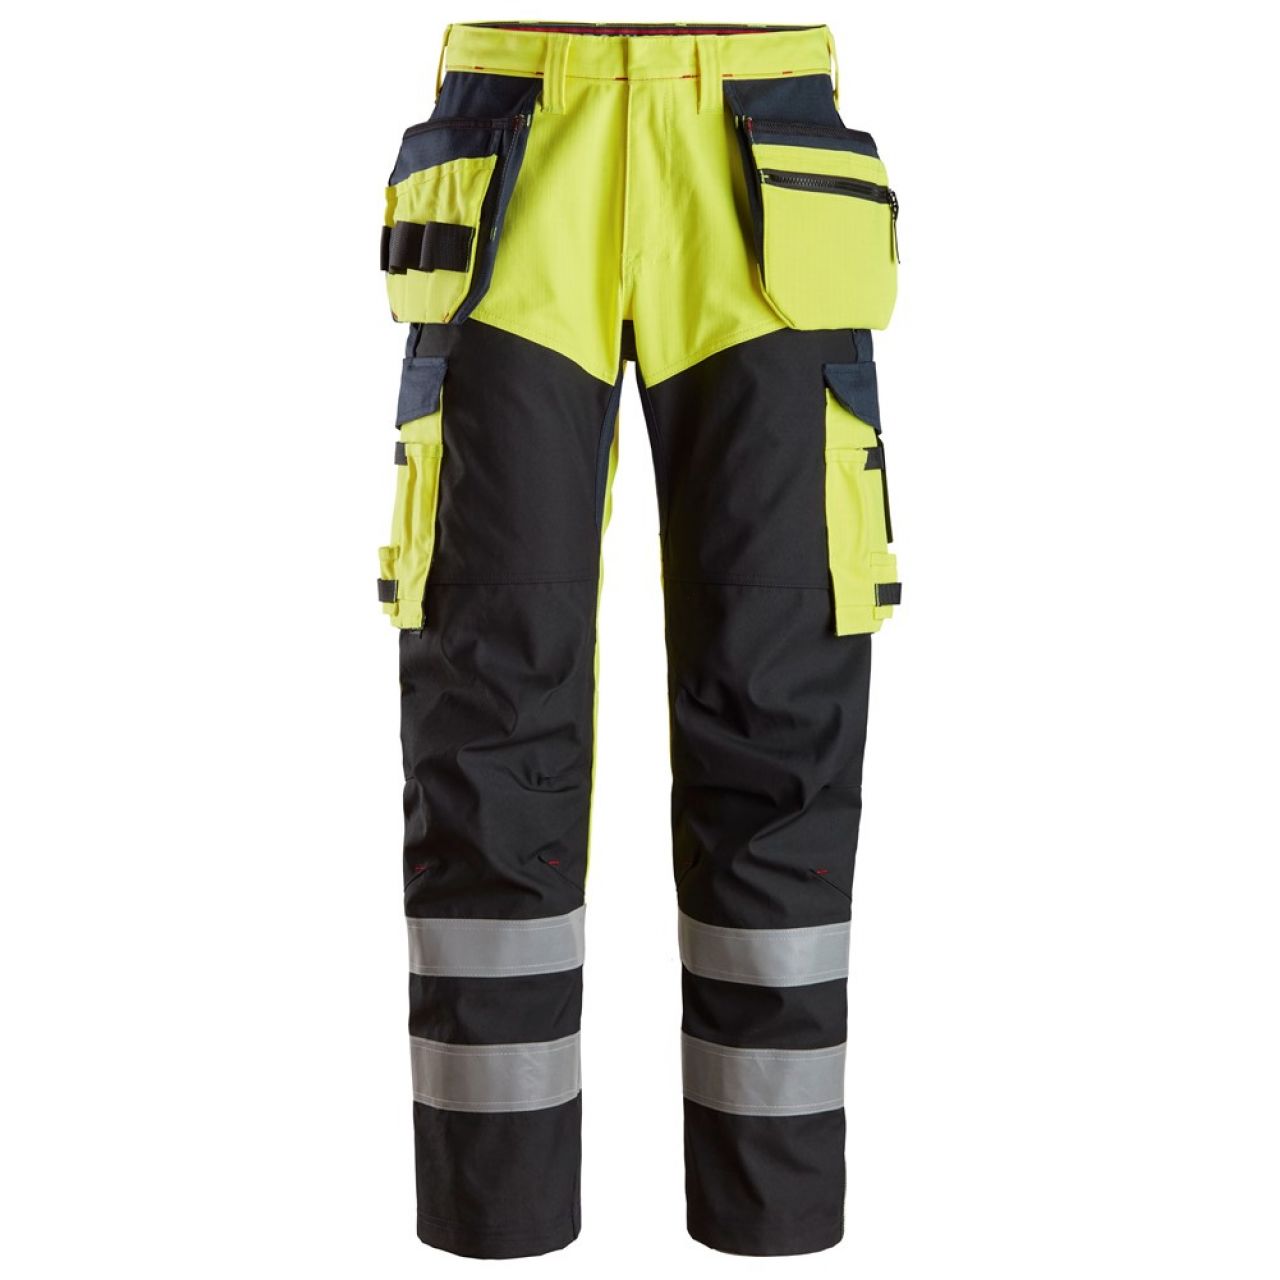 6265 Pantalones largos de trabajo de alta visibilidad clase 1 con bolsillos flotantes y espinilla reforzada ProtecWork amarillo-azul marino talla 88